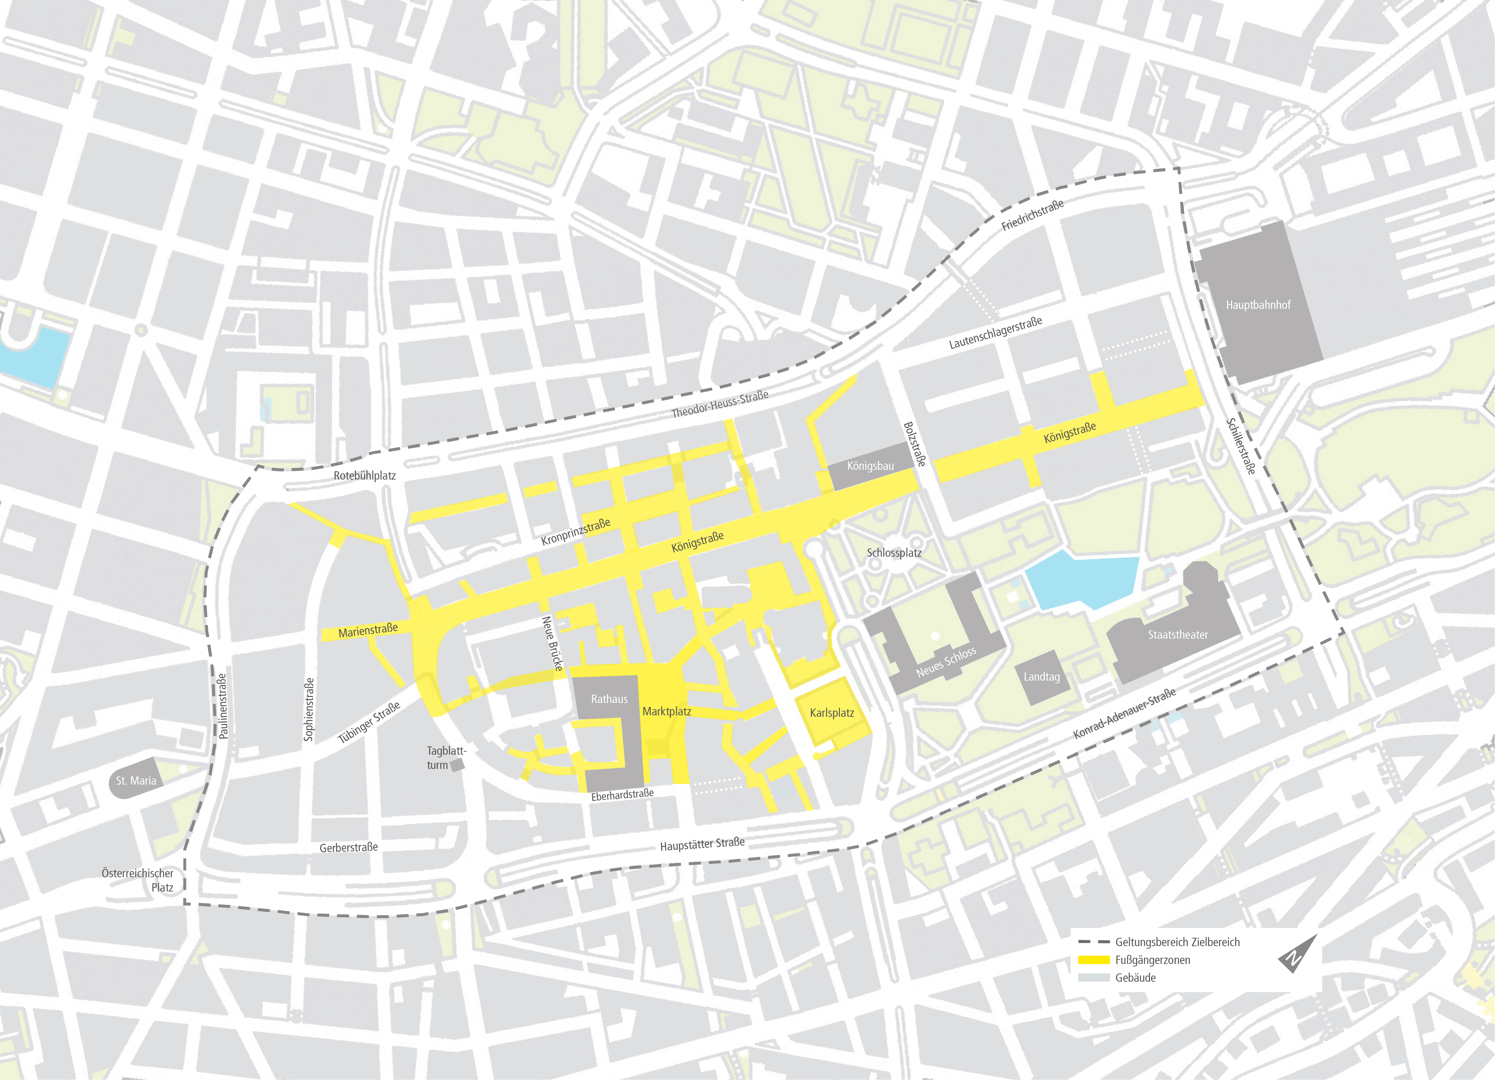 Für den Bereich innerhalb der gestrichelten Linie soll das Konzept für eine lebenswertere Innenstadt erstellt werden. Grafik: Stadt Stuttgart